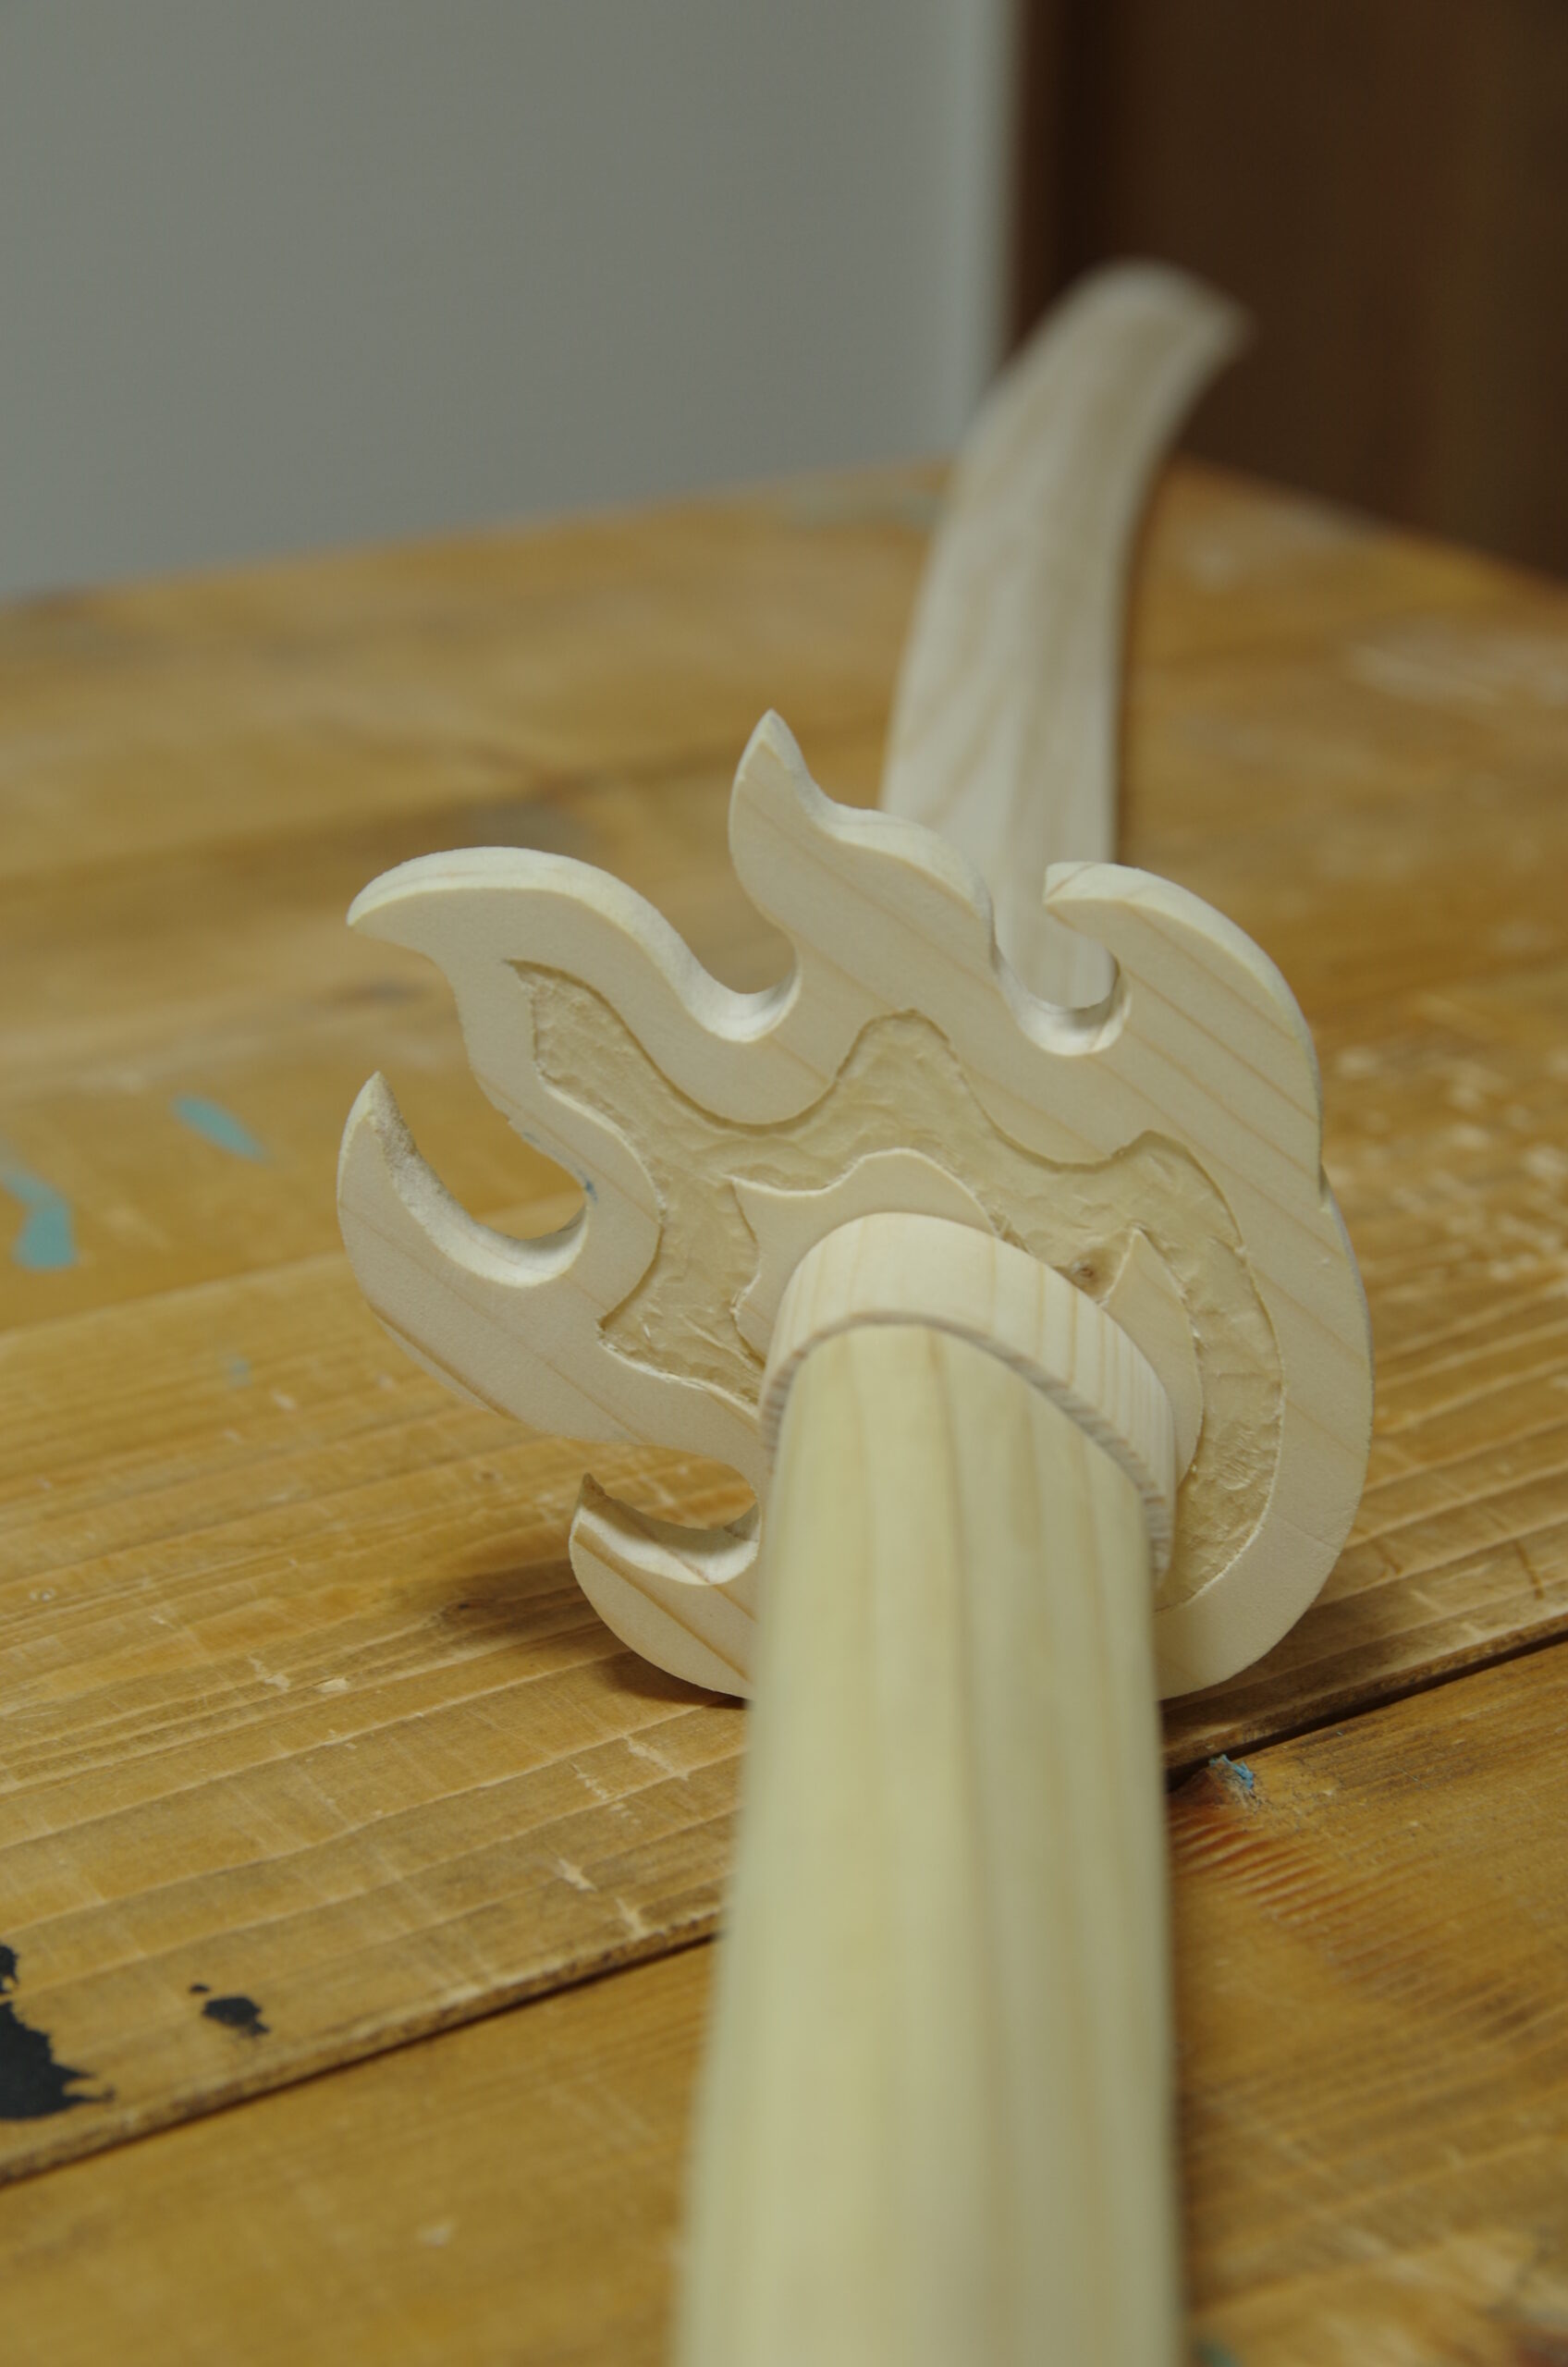 Diy 煉獄杏寿郎の日輪刀 木製 の作り方 Part 1 鬼滅の刃 とーちゃんのメモブログ